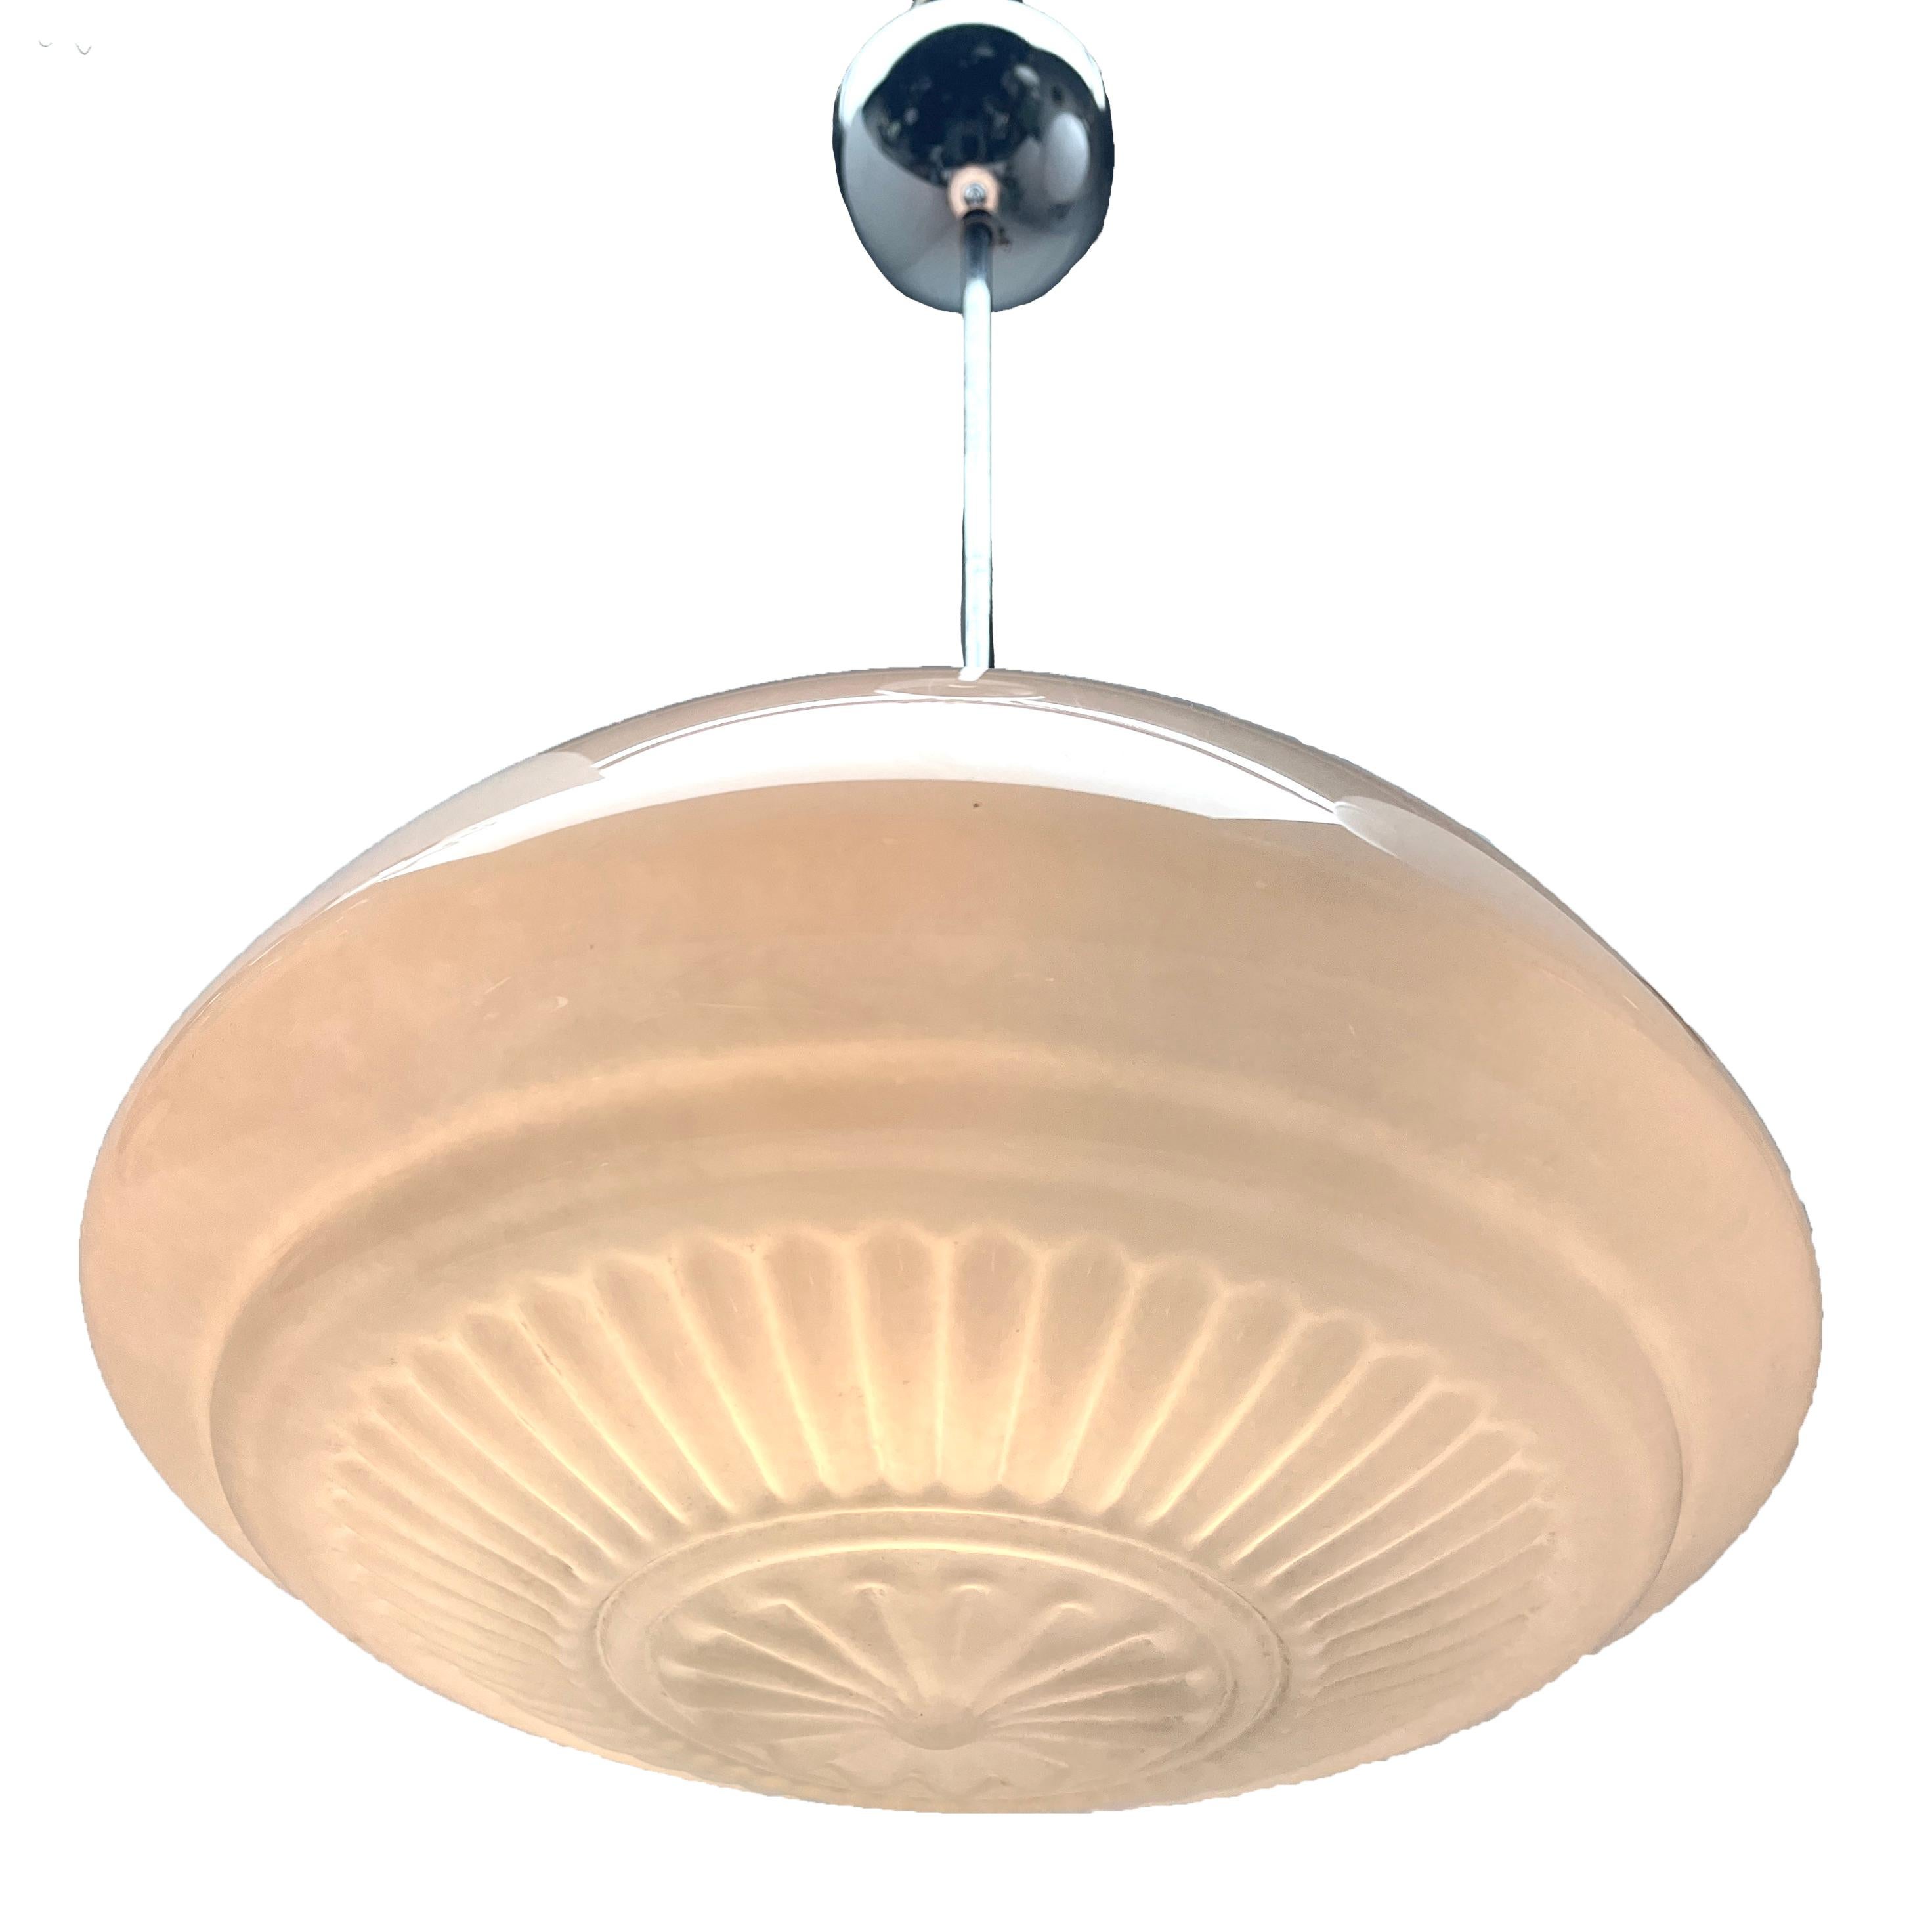 Aus der Reihe der Phillips Company stammt diese zentrale Leuchte auf einem verchromten Stiel. 
Die Lampe hat eine Halterung auf einer verchromten Platte und hält einen runden, kugelförmigen Schirm aus Opalglas.

In gutem Zustand und voll